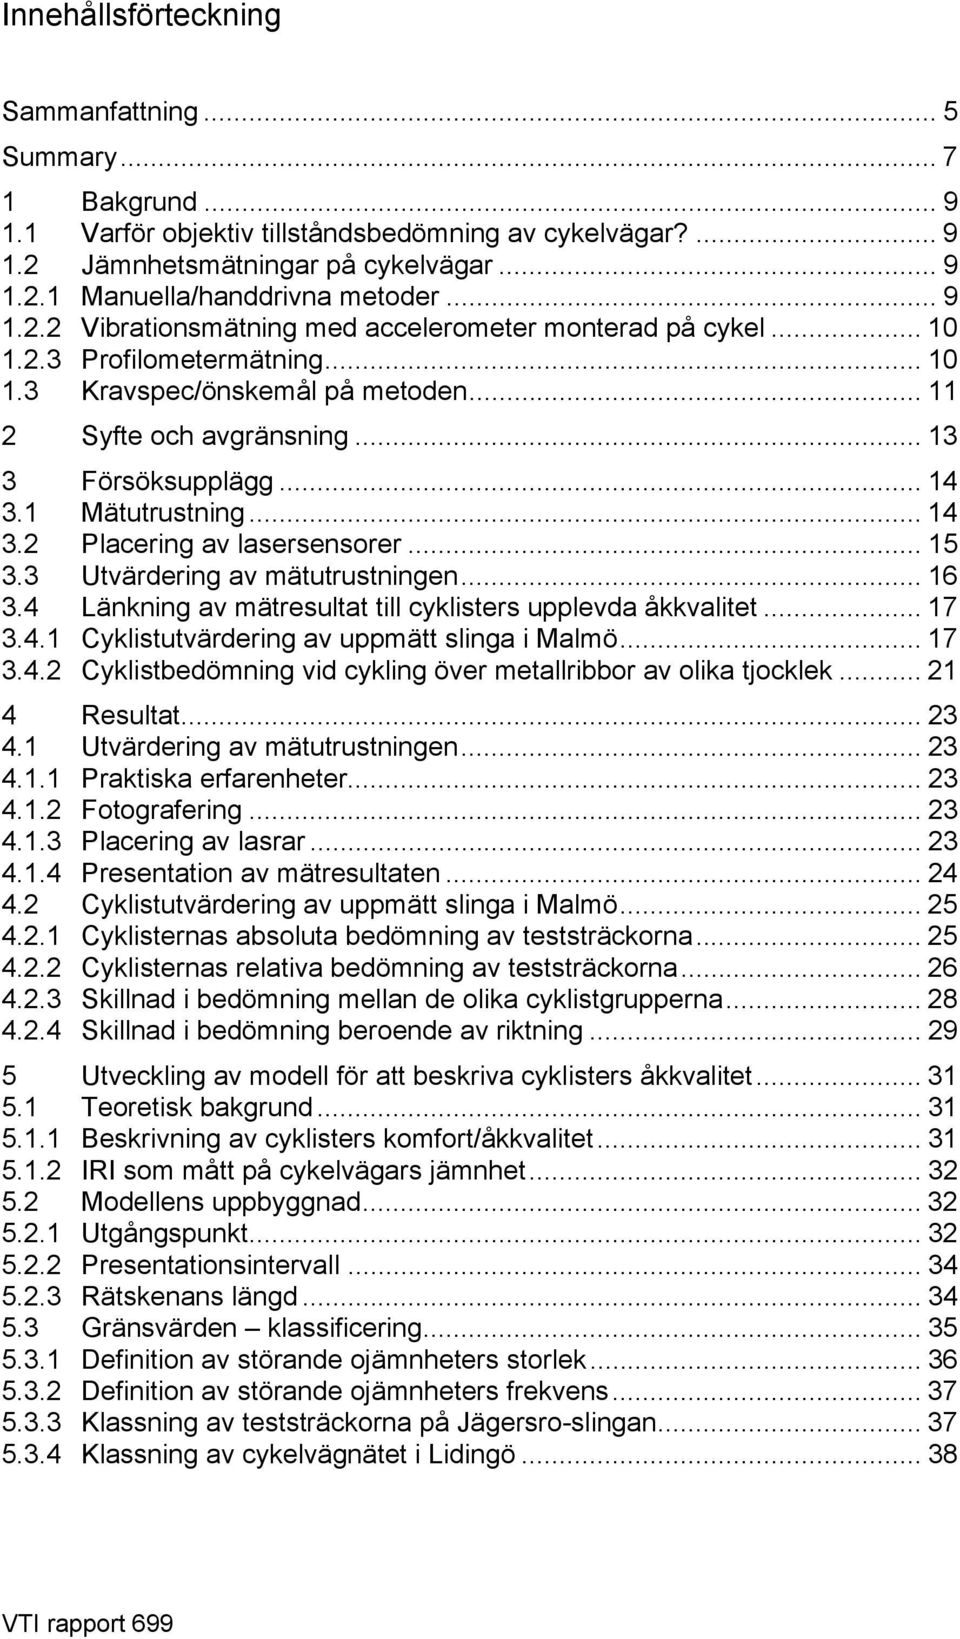 1 Mätutrustning... 14 3.2 Placering av lasersensorer... 15 3.3 Utvärdering av mätutrustningen... 16 3.4 Länkning av mätresultat till cyklisters upplevda åkkvalitet... 17 3.4.1 Cyklistutvärdering av uppmätt slinga i Malmö.